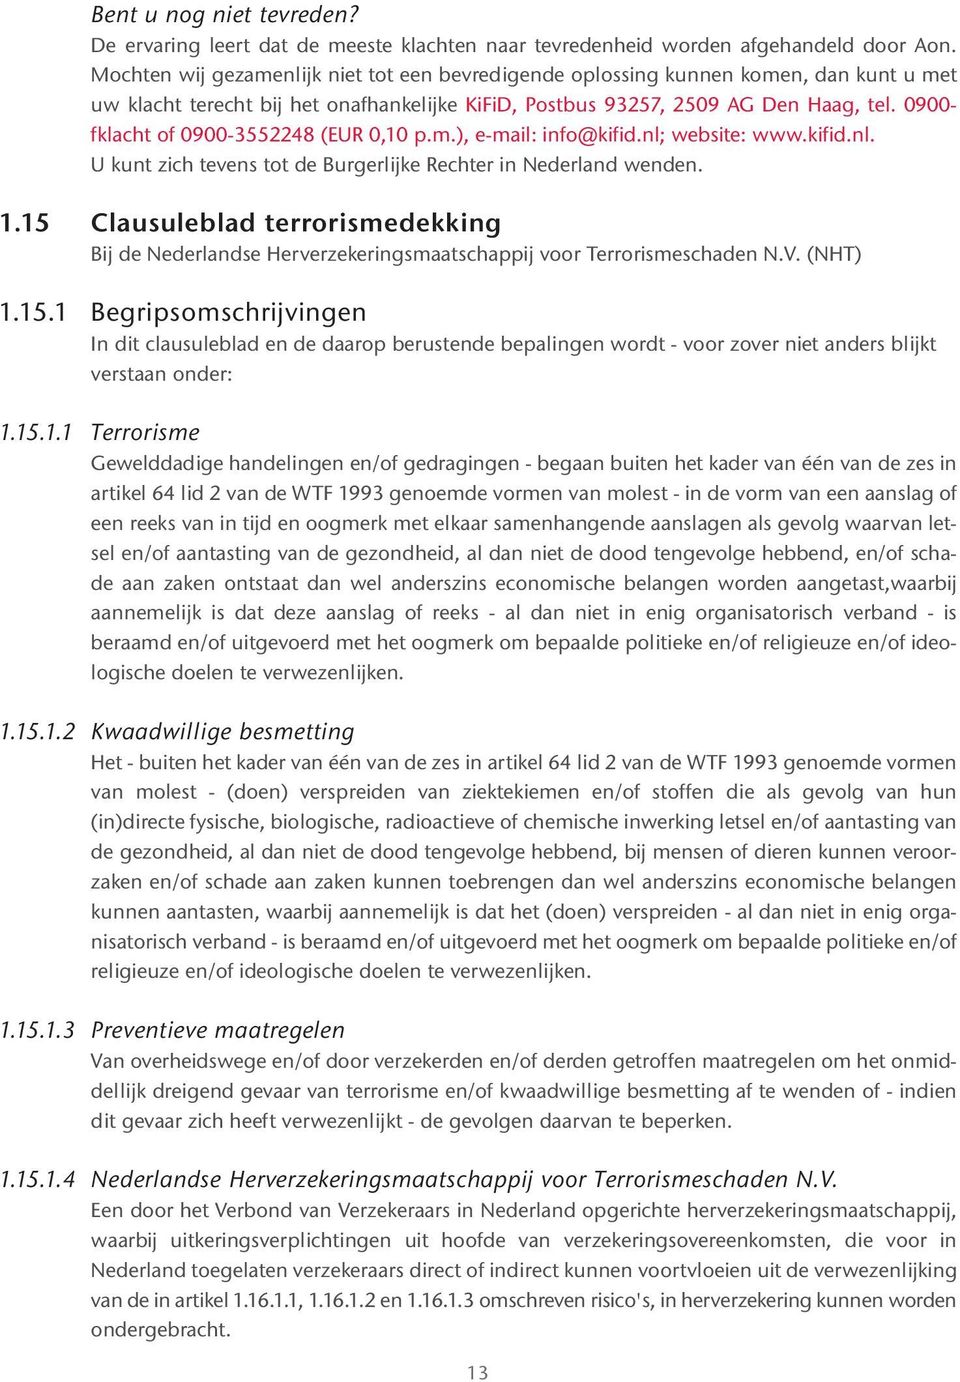 0900- fklacht of 0900-3552248 (EUR 0,10 p.m.), e-mail: info@kifid.nl; website: www.kifid.nl. U kunt zich tevens tot de Burgerlijke Rechter in Nederland wenden. 1.